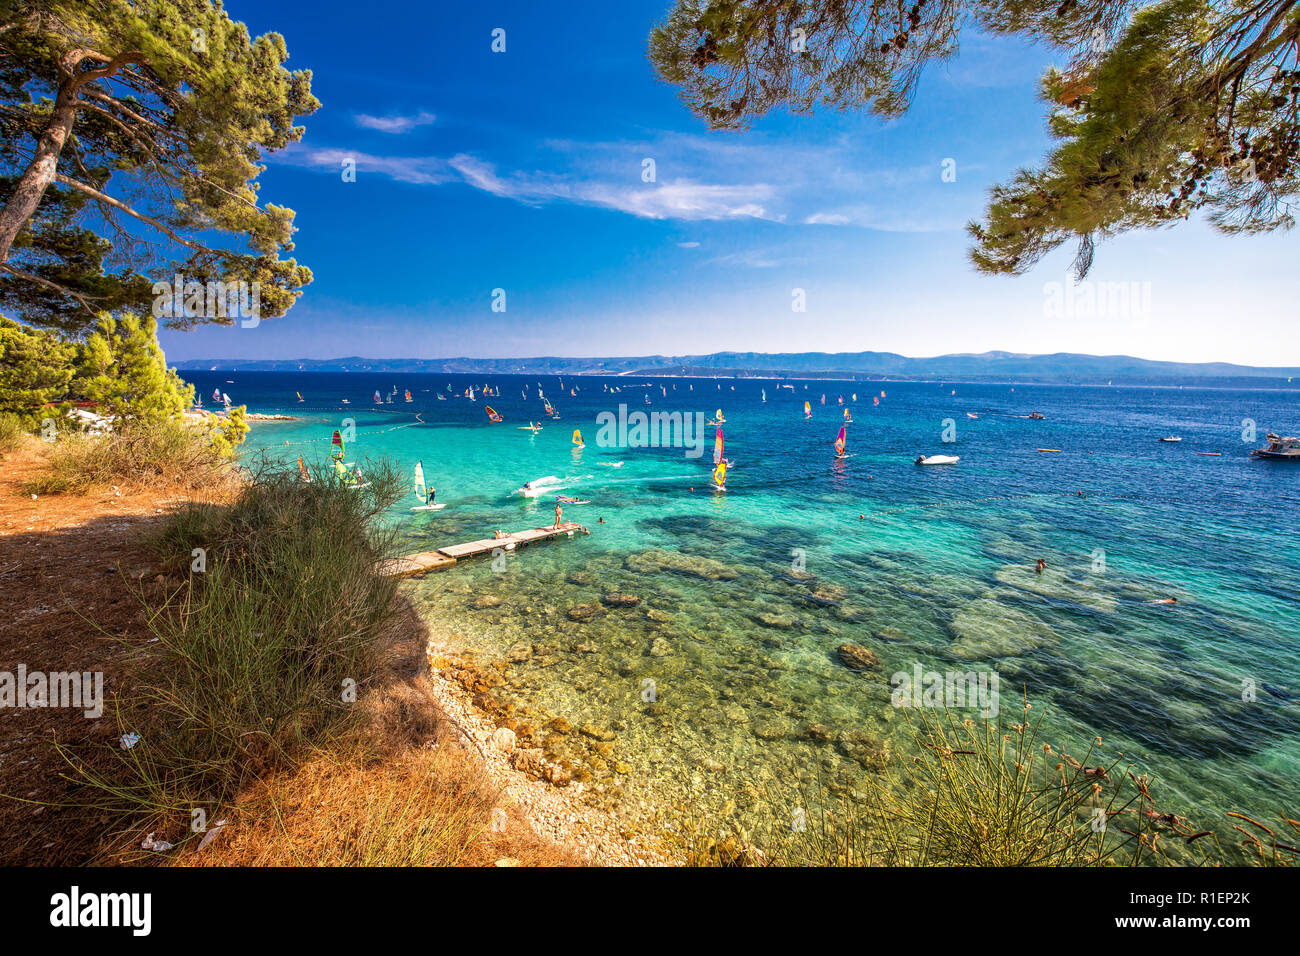 Passeggiata sul mare sull'isola di Brac con alberi di pino e turchese chiaro di acqua oceanica, Bol, Isola di Brac, Croazia. Foto Stock